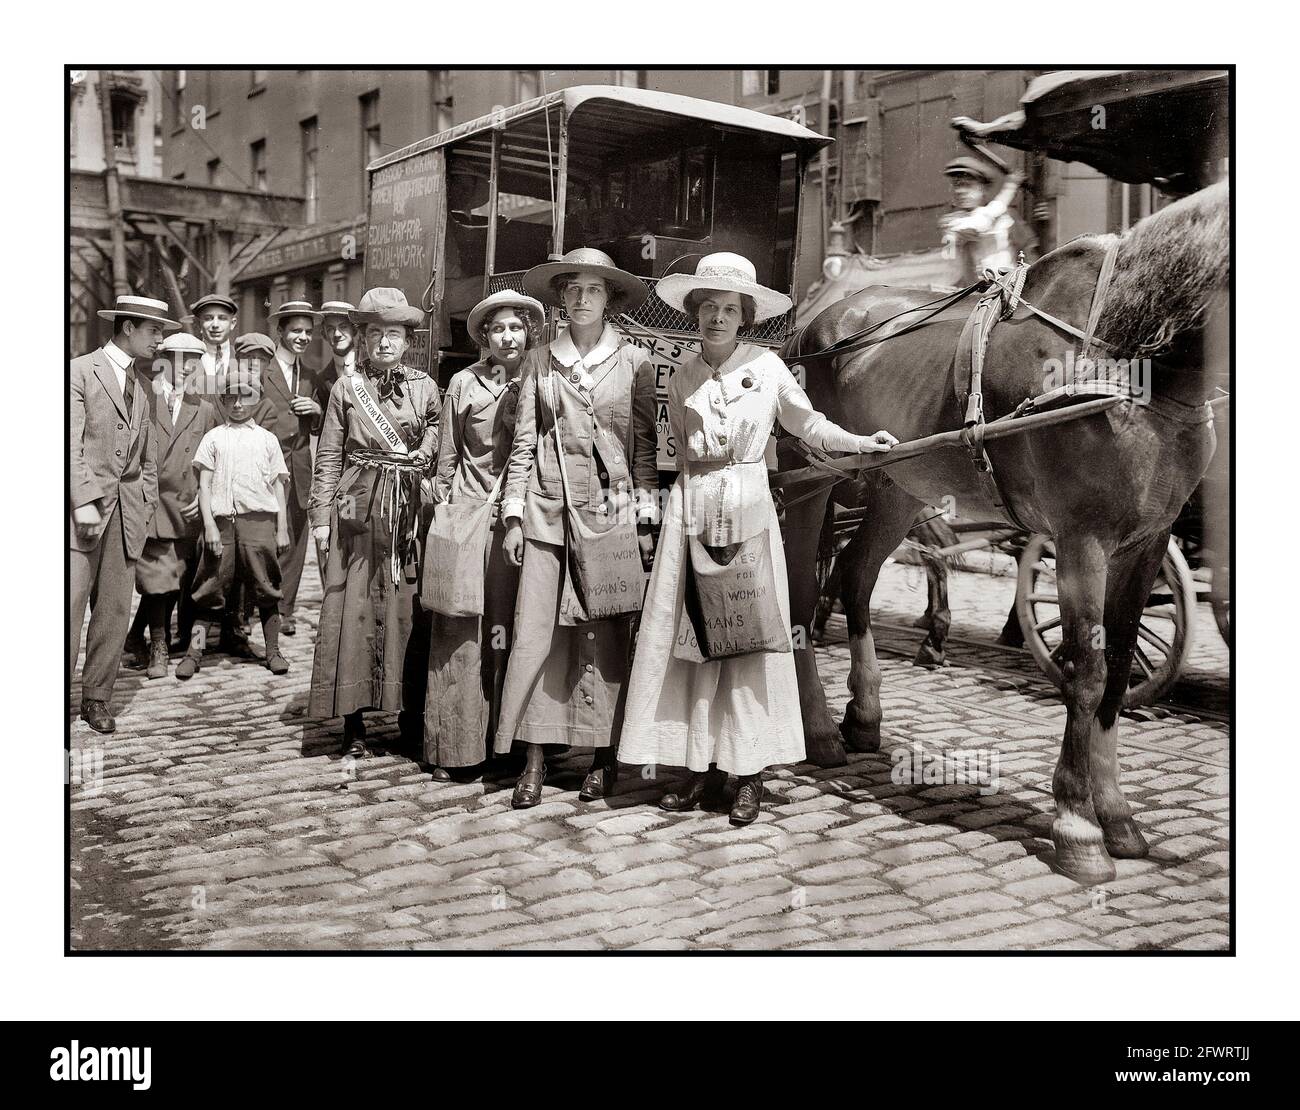 Suffragettes américaines 1910 (de gauche à droite) suffragistes Ida Craft, Elsie McKenzie, Vera Wentworth et Elisabeth Freeman (1876-1942). Les femmes qui vendent le Journal Womens pour 5 cents à l'appui des votes pour les femmes d'un transport de cheval et de chariot suffrage Suffragettes America USA Banque D'Images